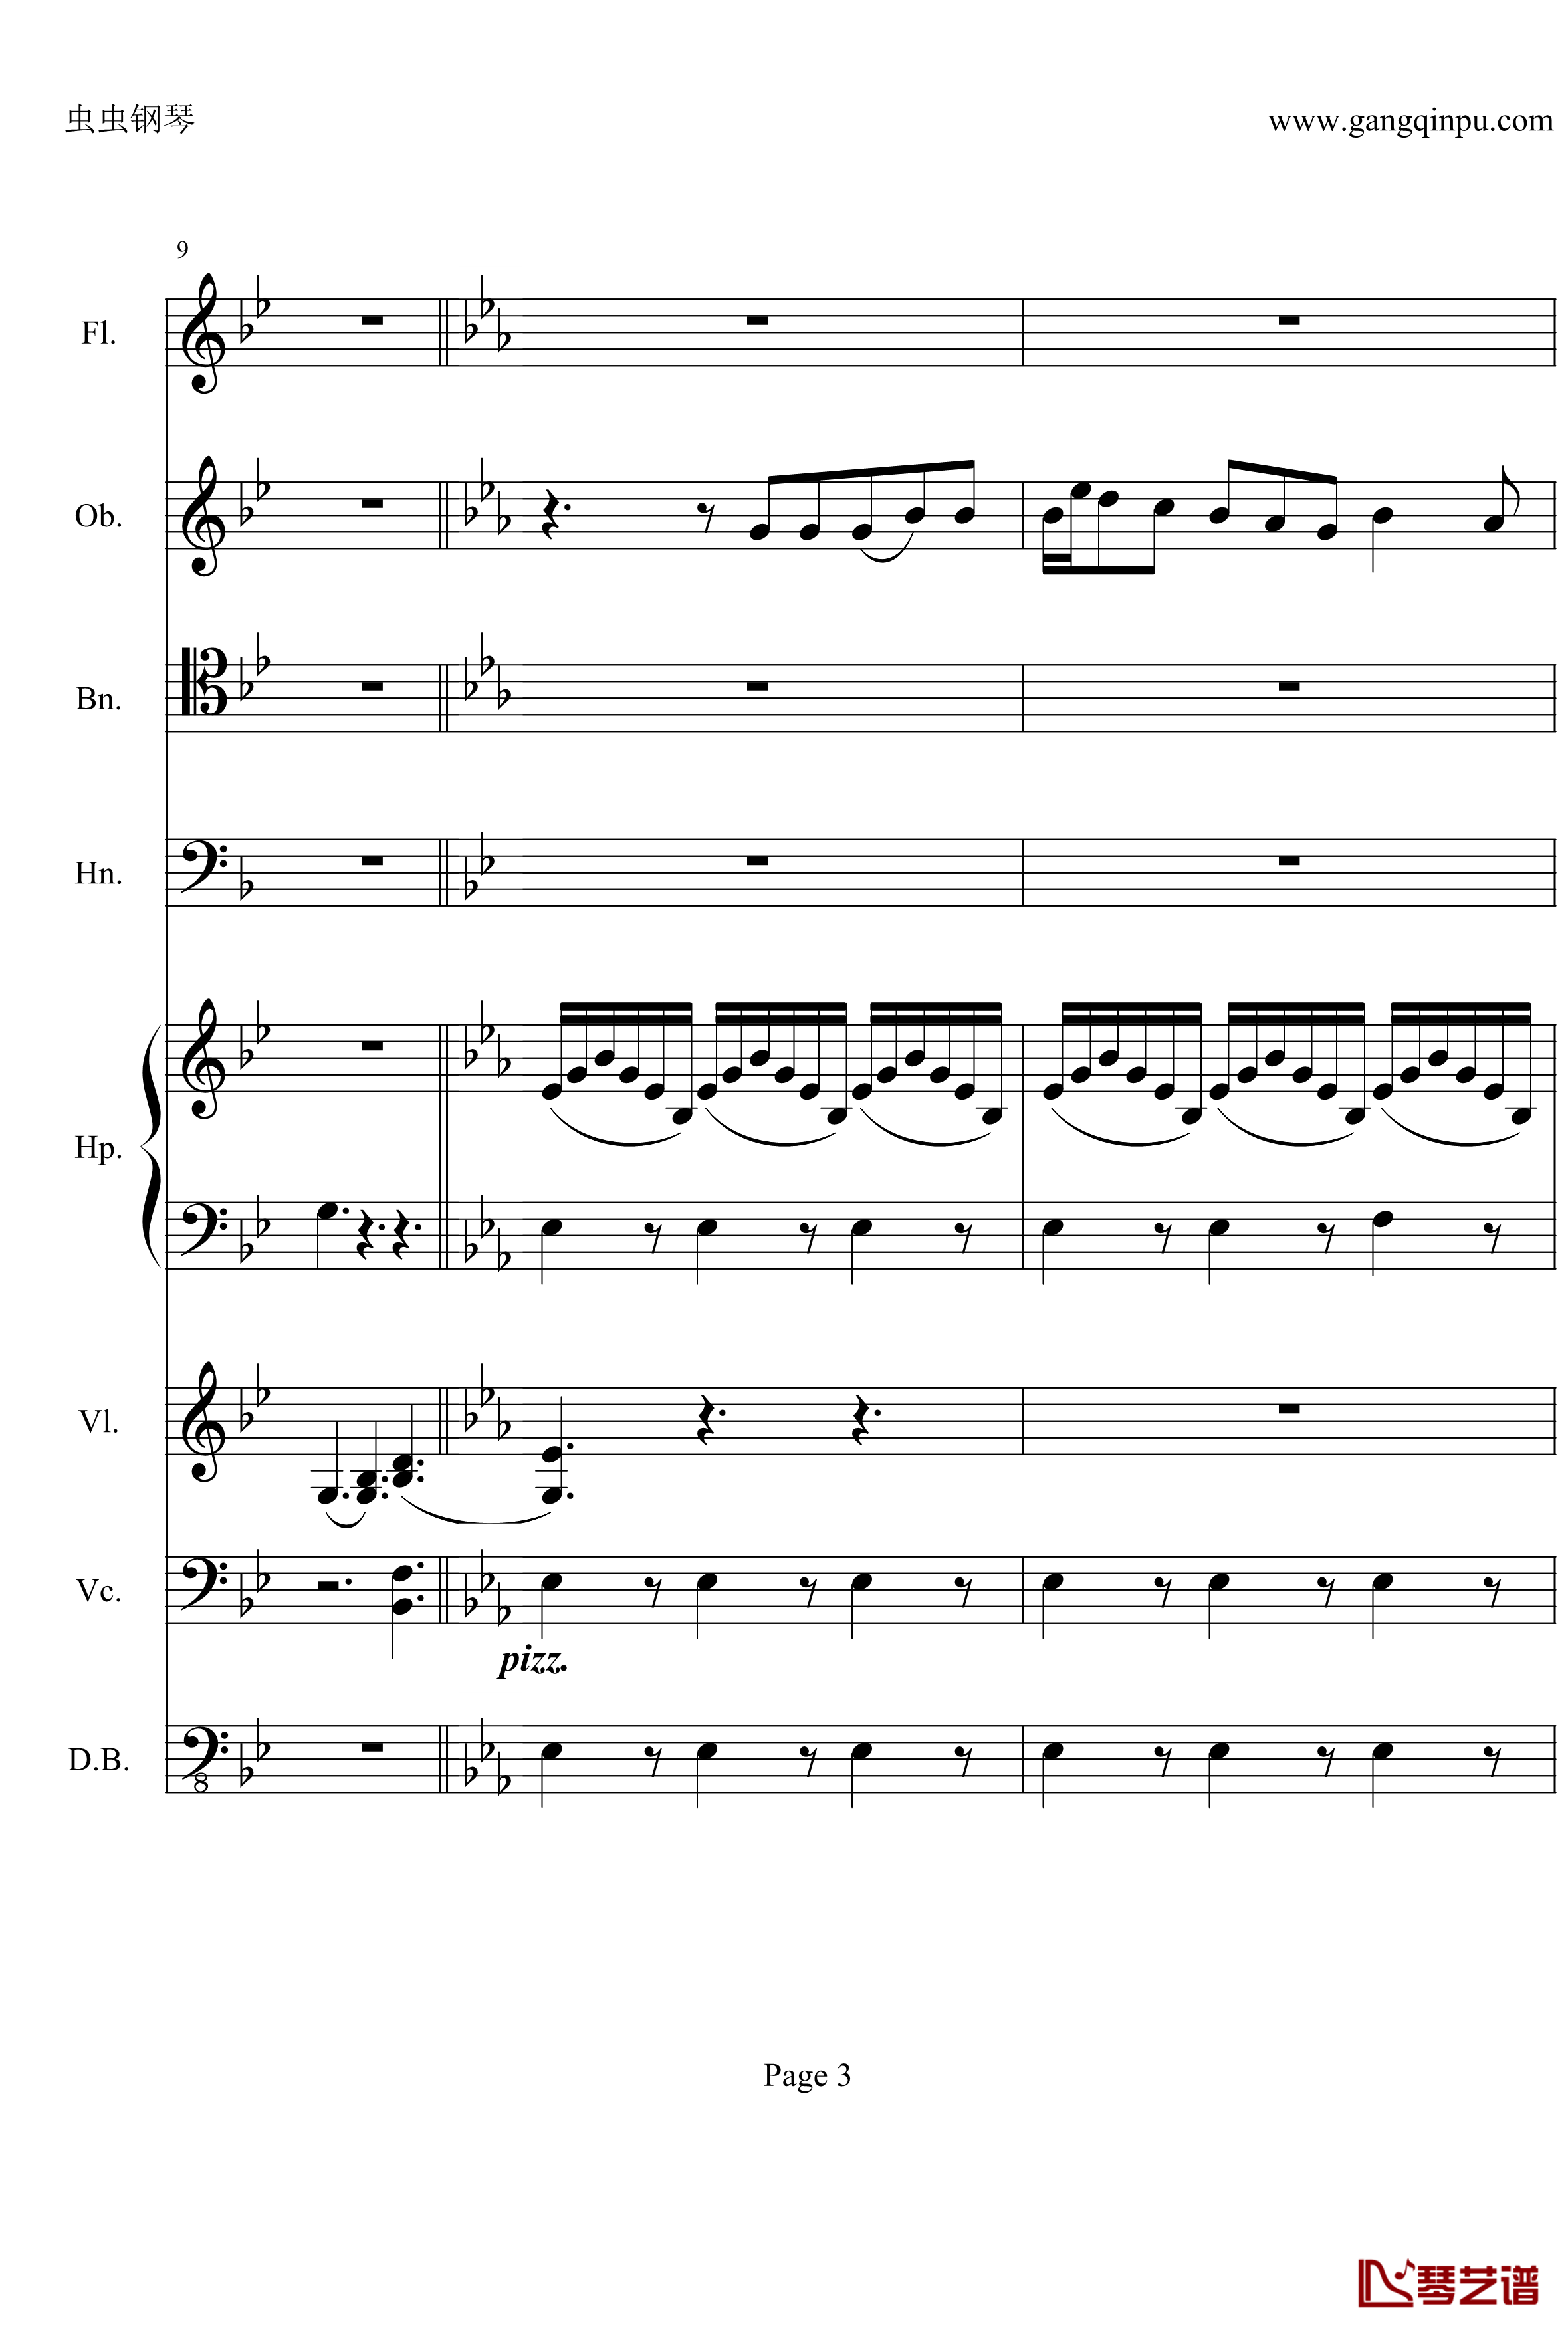 奏鸣曲之交响钢琴谱-第25首-Ⅱ-贝多芬-beethoven3